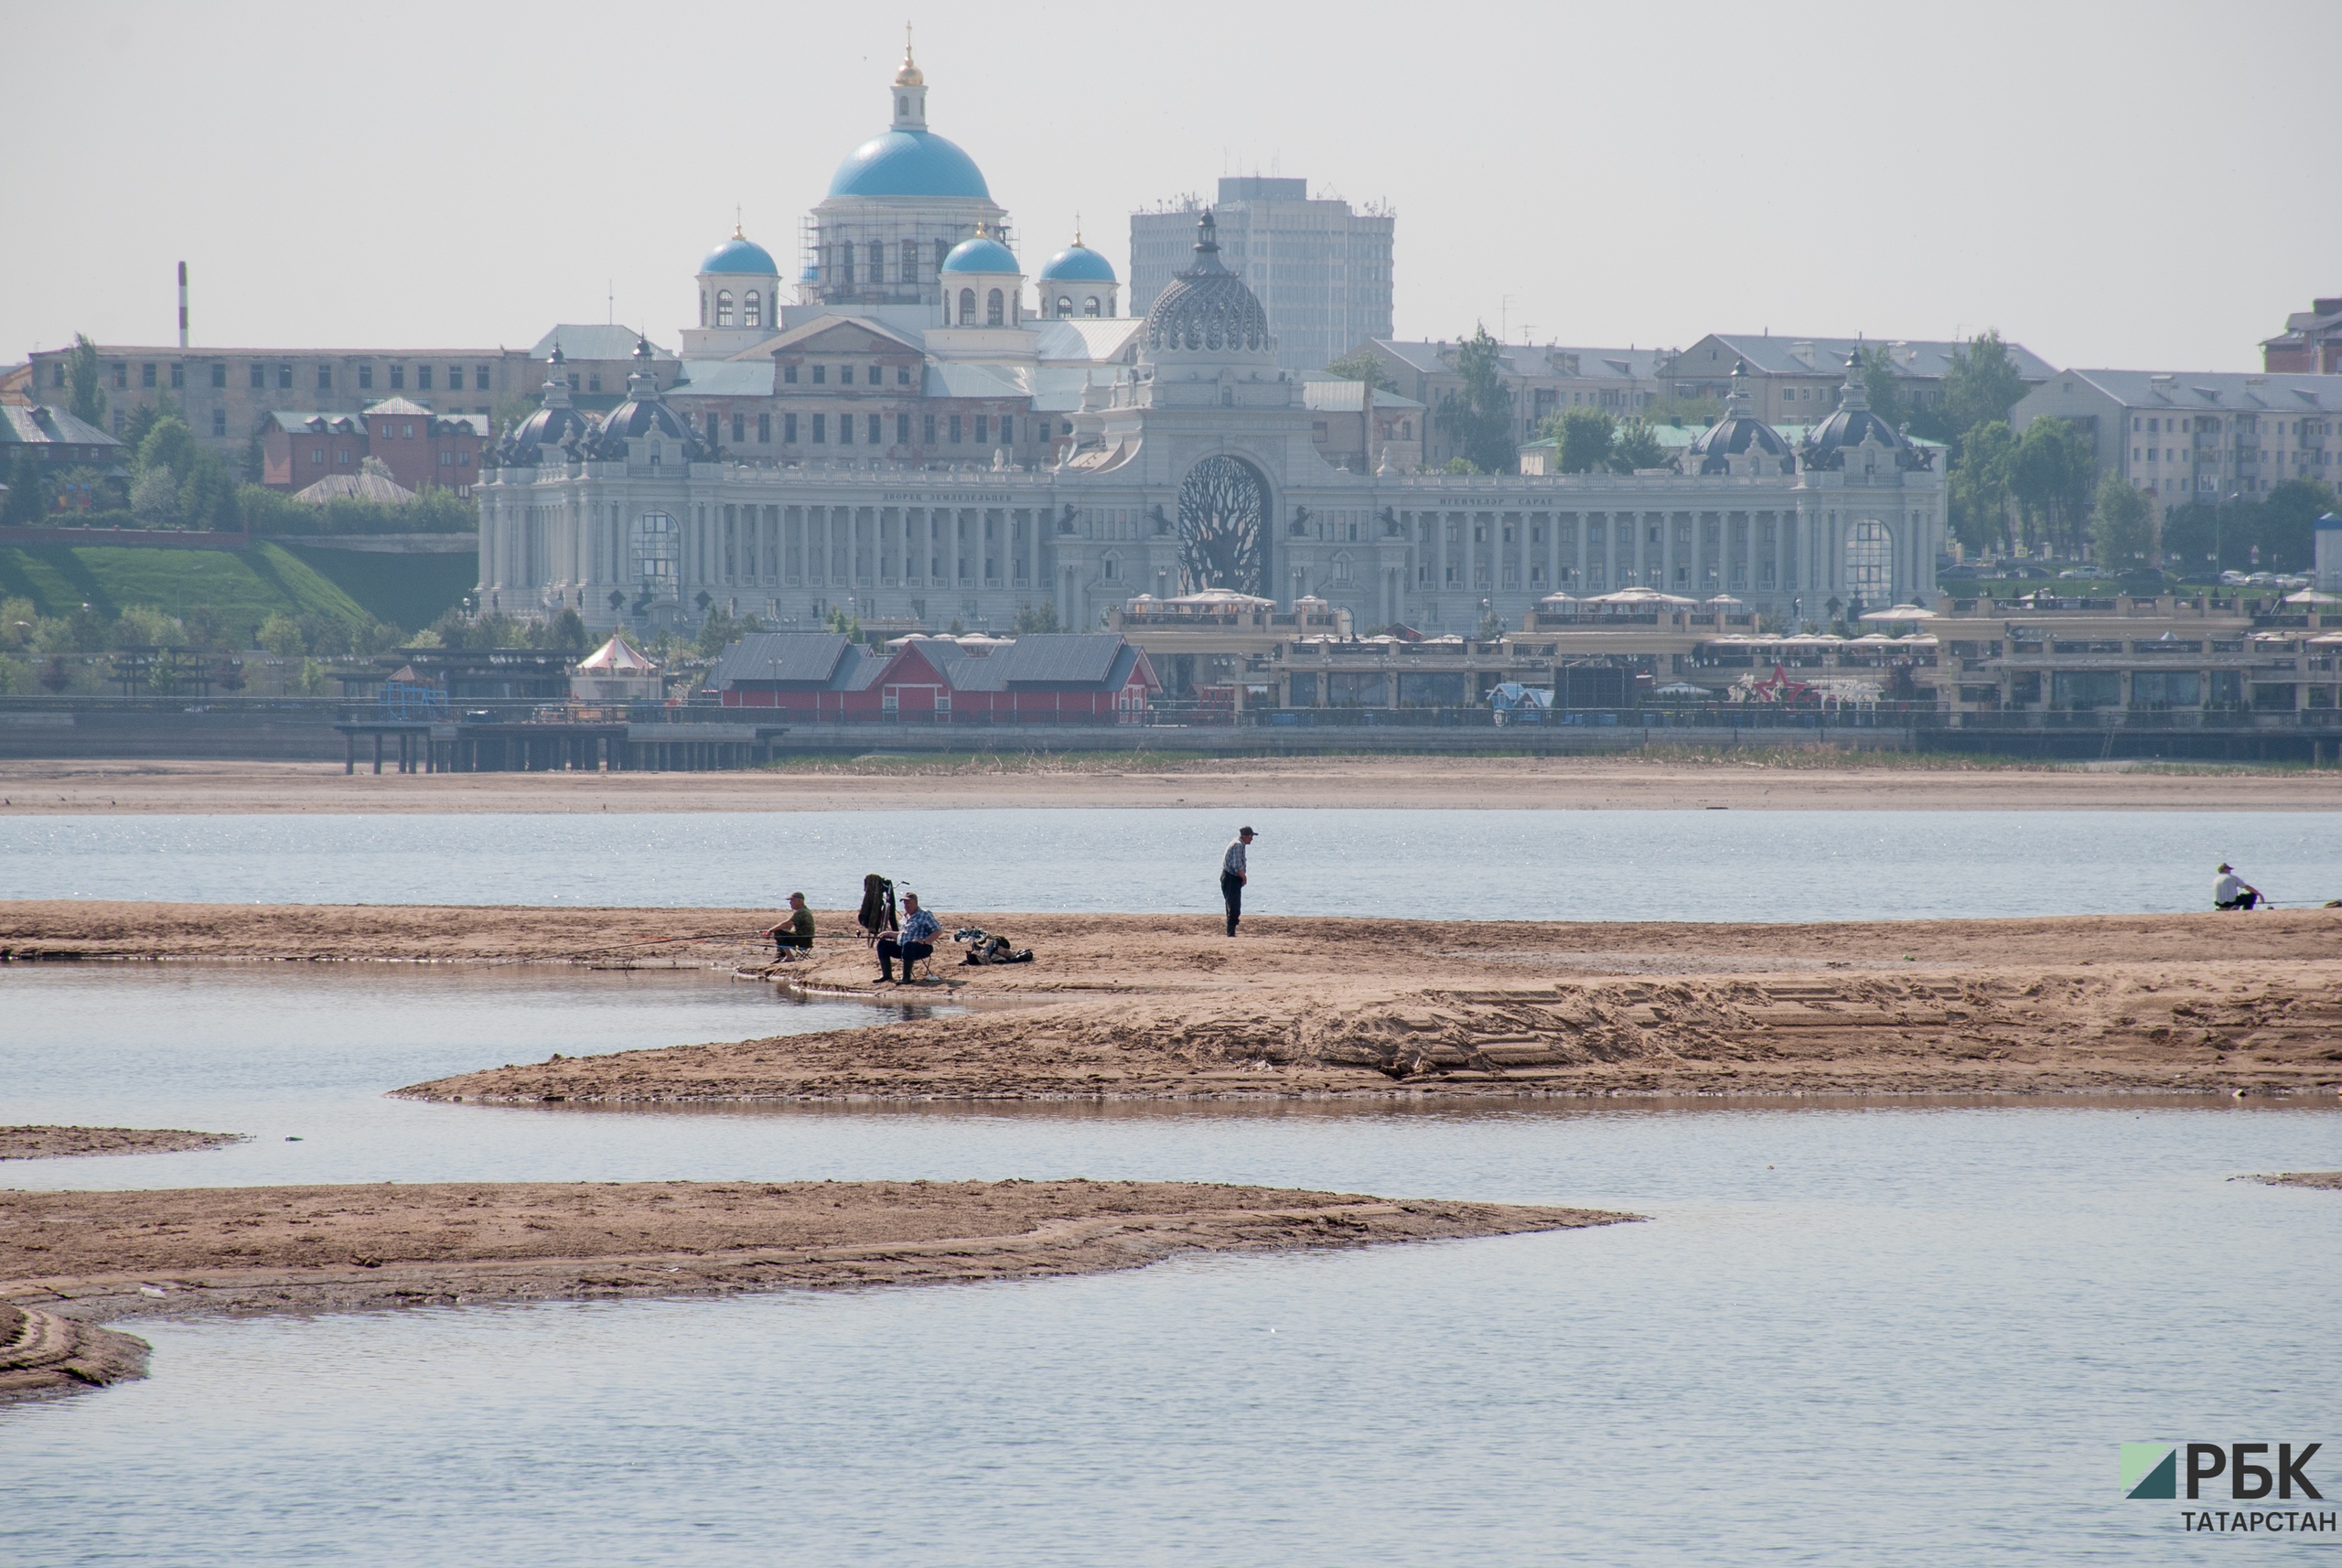 Бизнес на мели: в Казани упала выручка от речных экскурсий